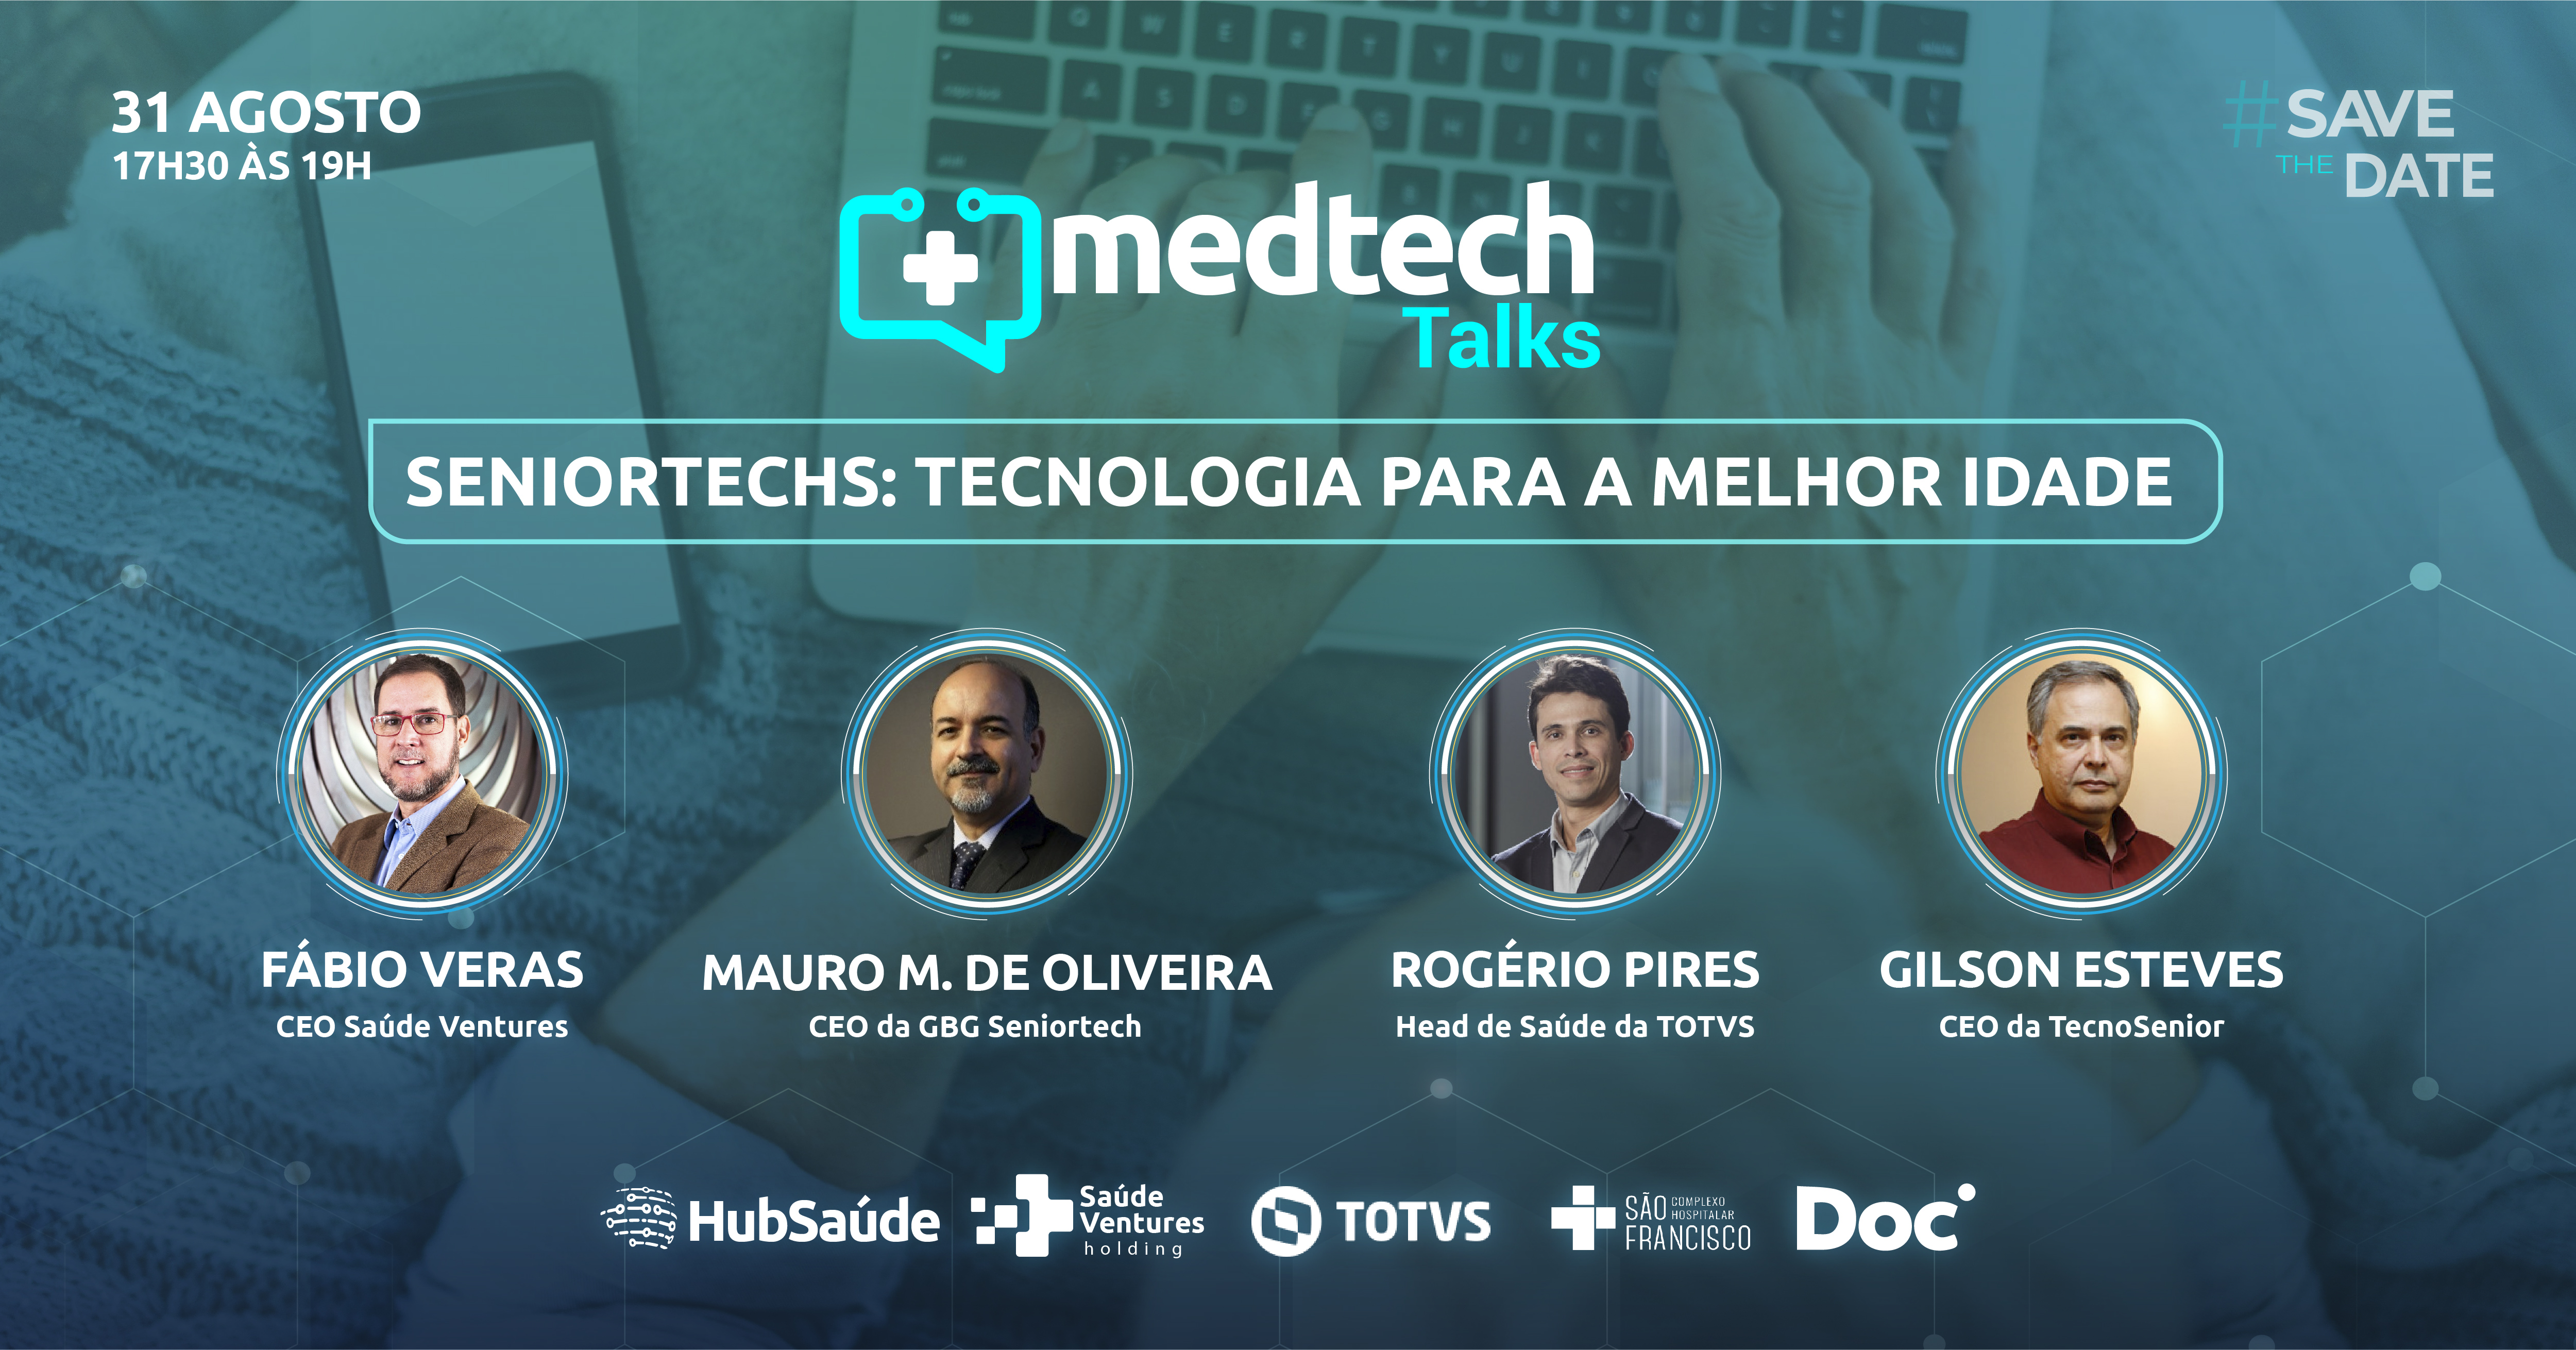 MedTech Talks – Seniortechs: Tecnologia para a melhor idade